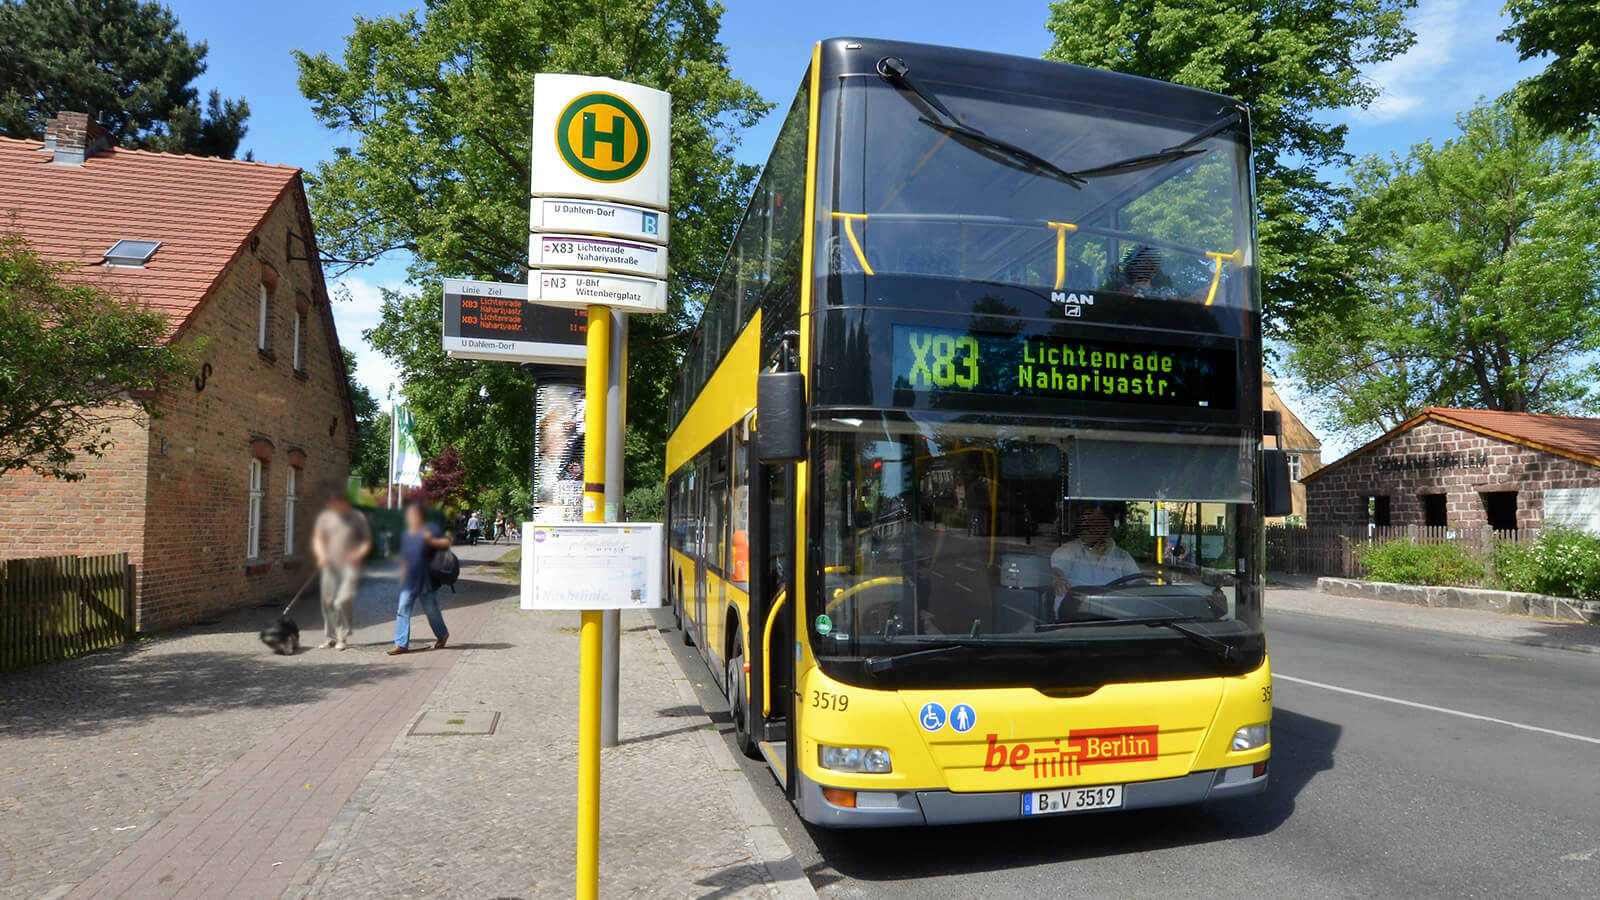 BVG Bus der Linie X83 an einer Haltestelle in der Stadt.